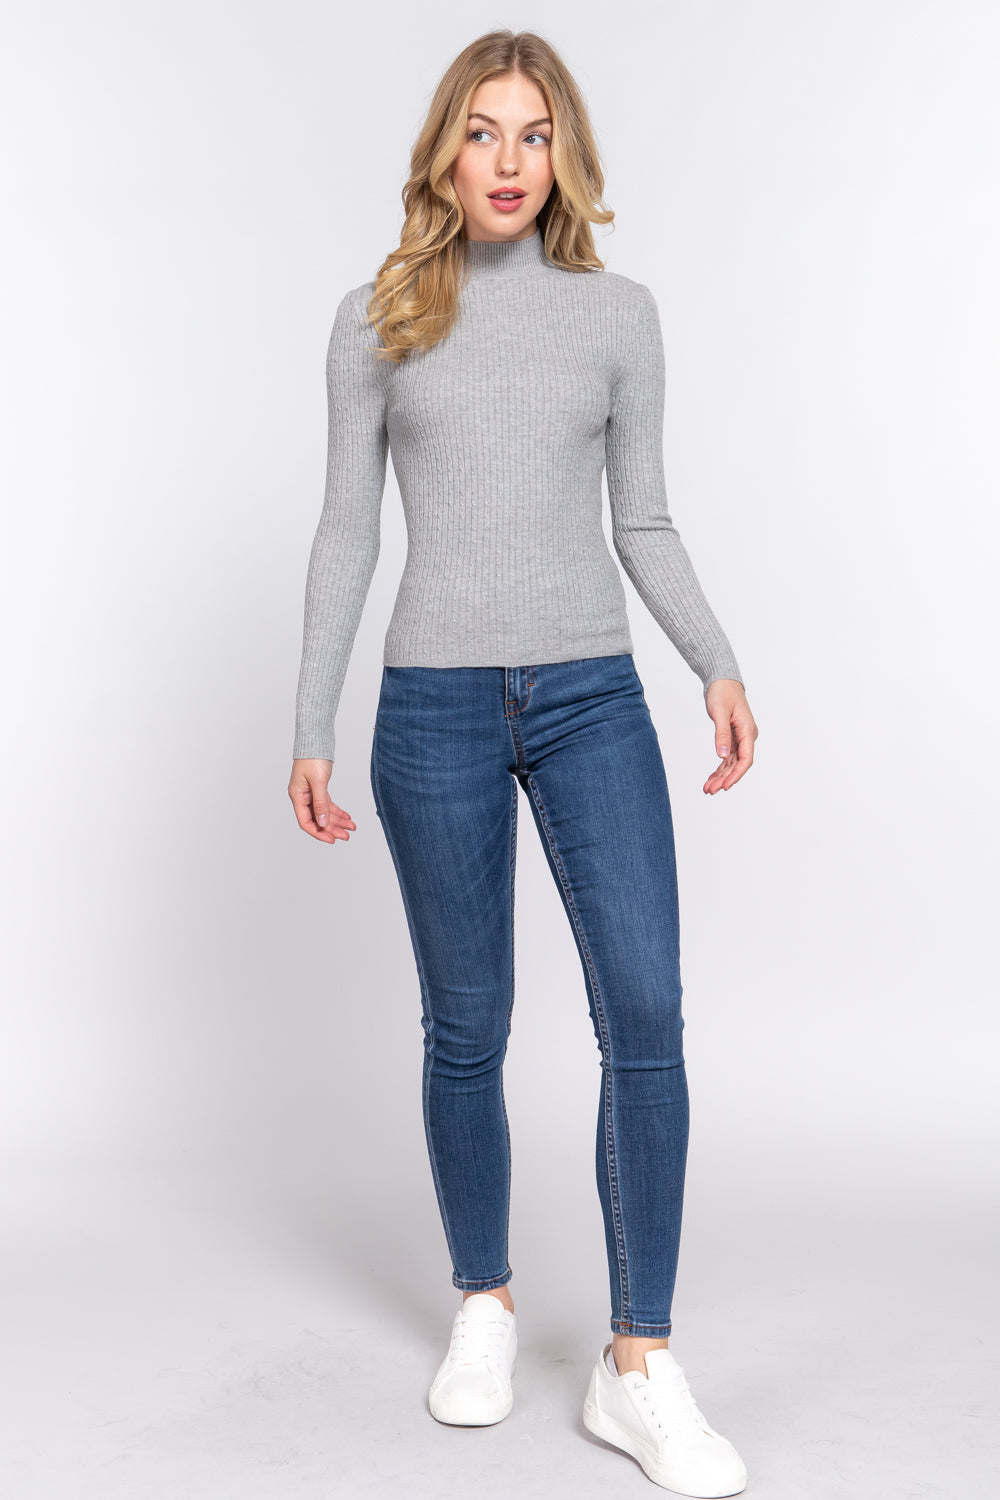 Active Basic Ribbed Mock Neck Sweater Shirts & Tops RYSE Clothing Co. Heather Grey S 